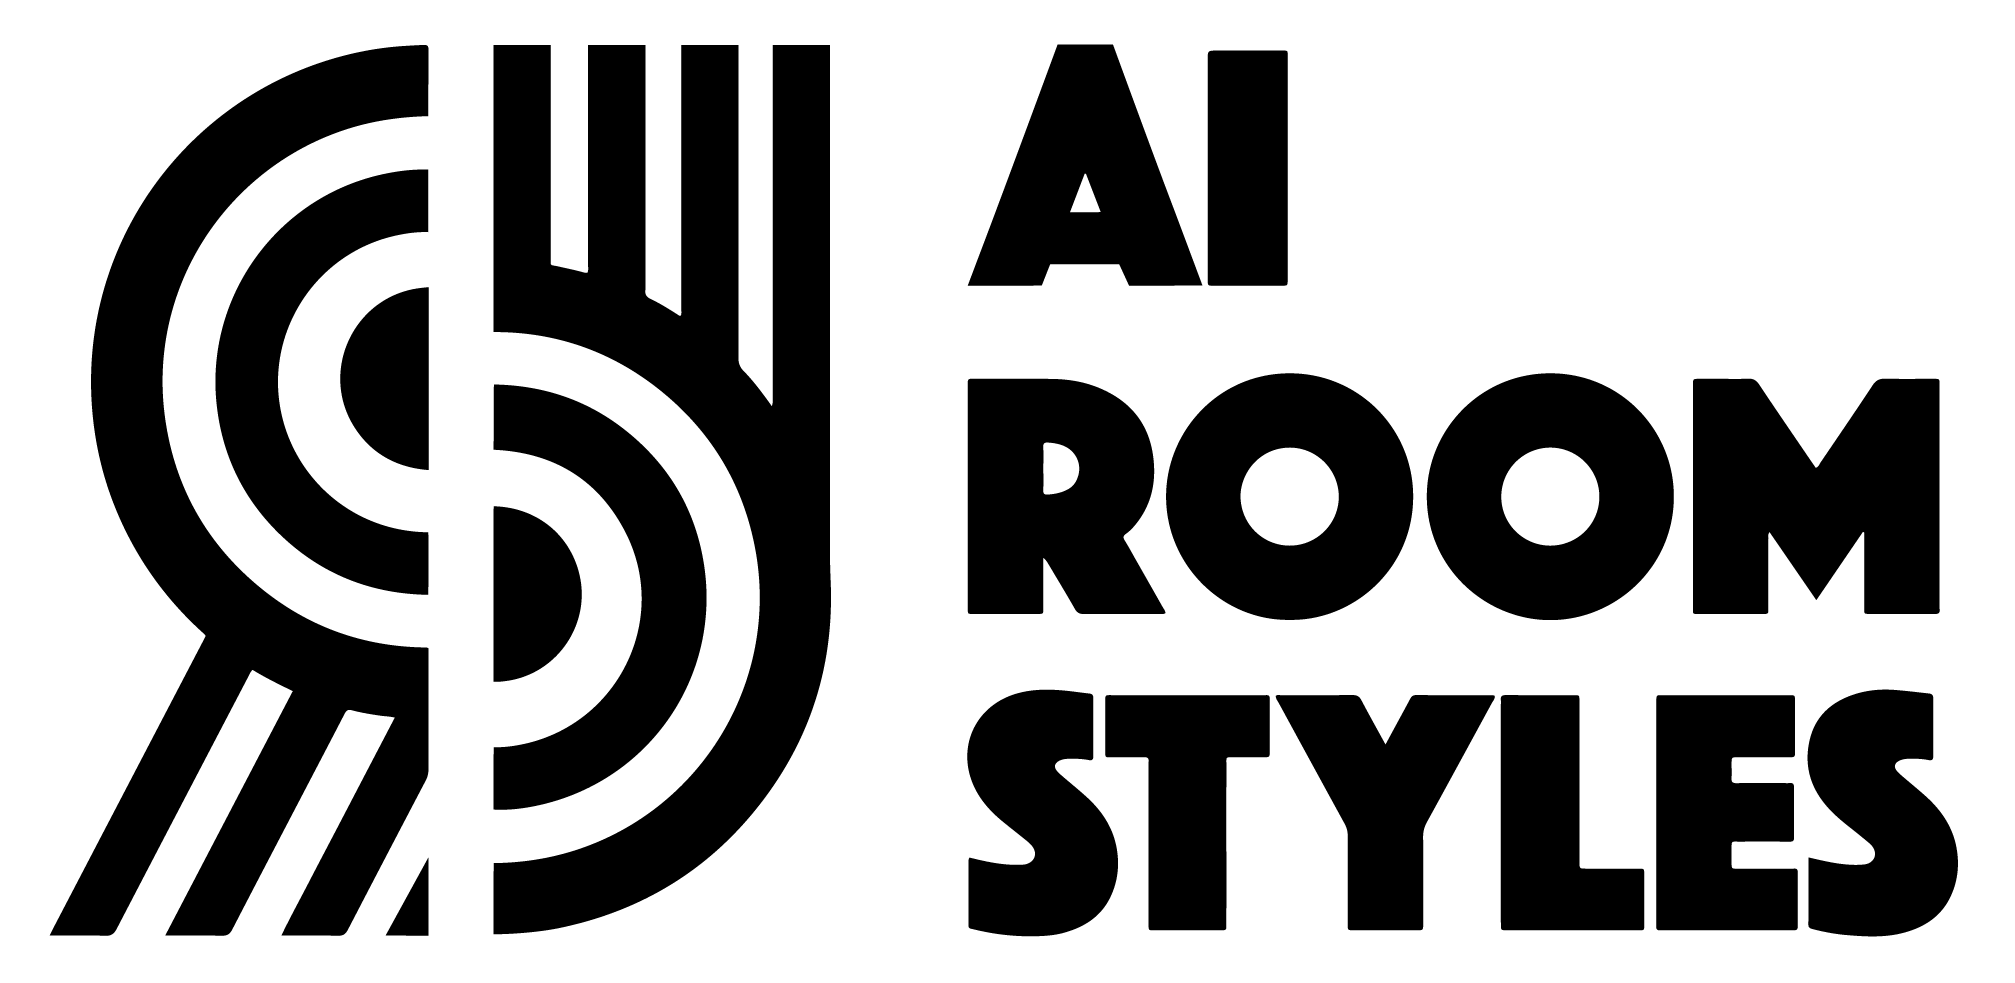 AI Room Styles logo